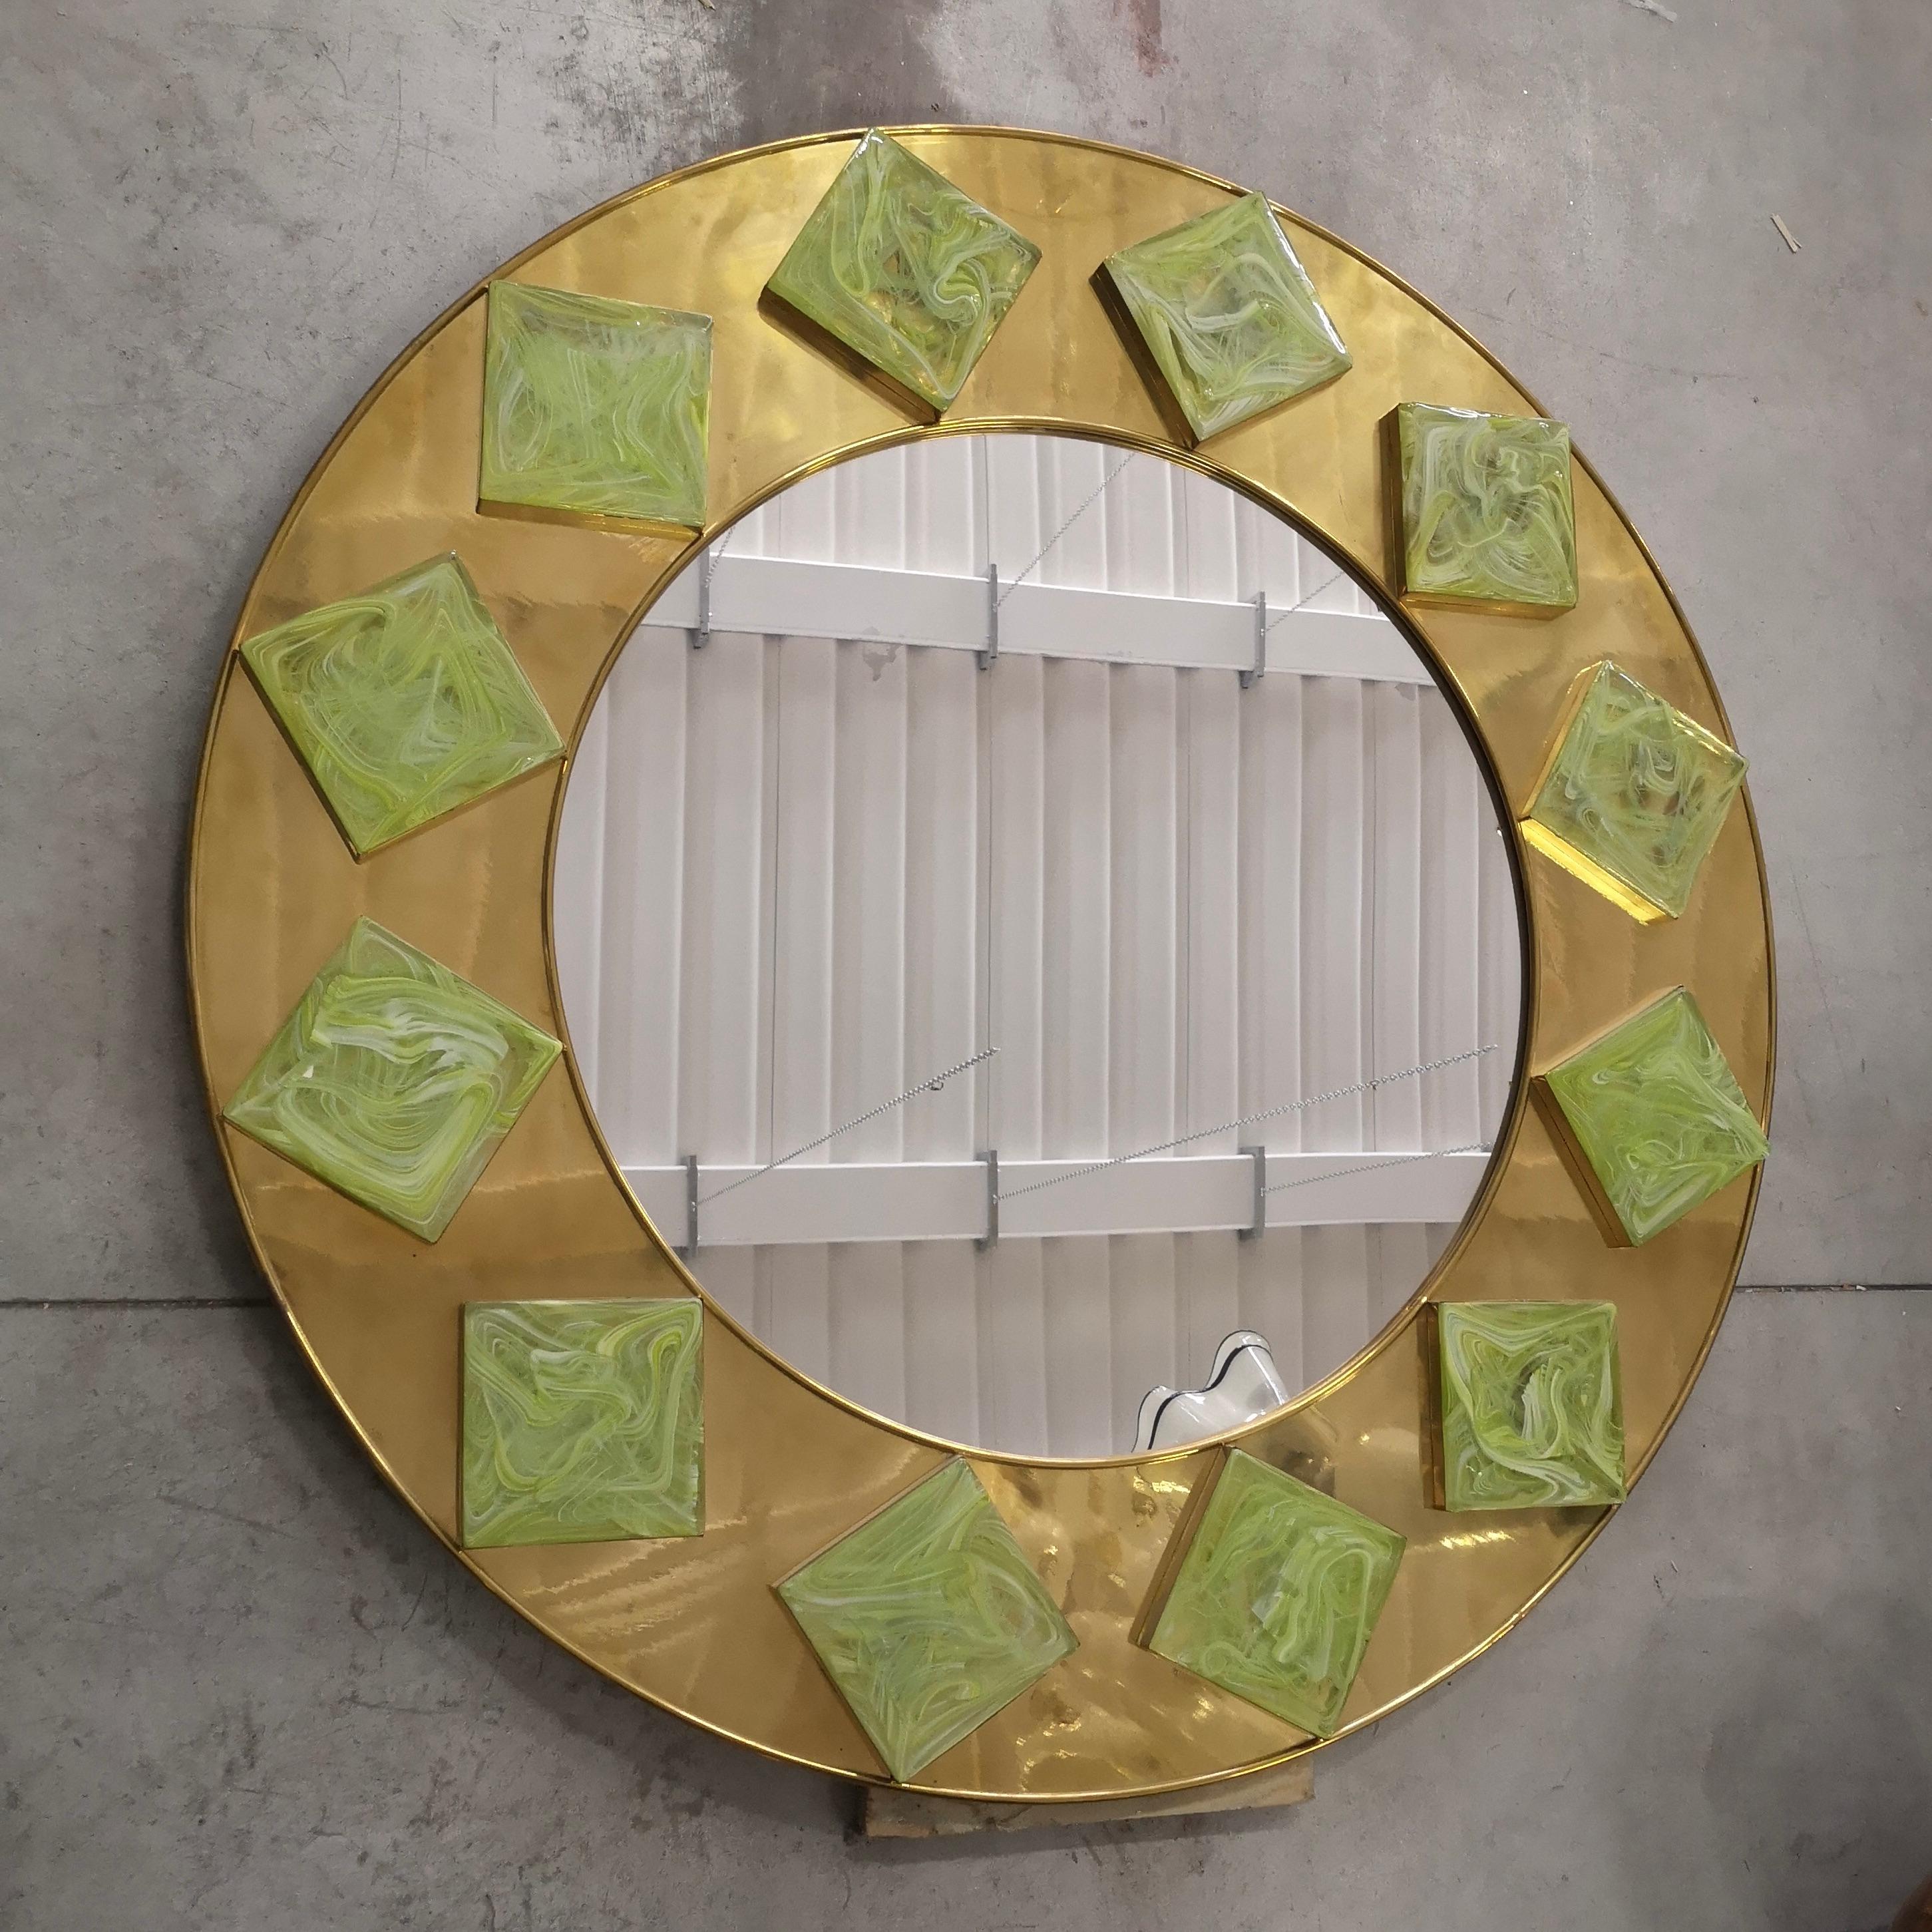 Murano Wandspiegel aus der Mitte des letzten Jahrhunderts. Dieser Spiegel hat ein sehr brillantes Aussehen, durch die Verwendung von nicht gemeinsamen Materialien, Messing und Murano Glas grün Quadrat.

Holzrahmen, überzogen mit einem Messingrahmen.